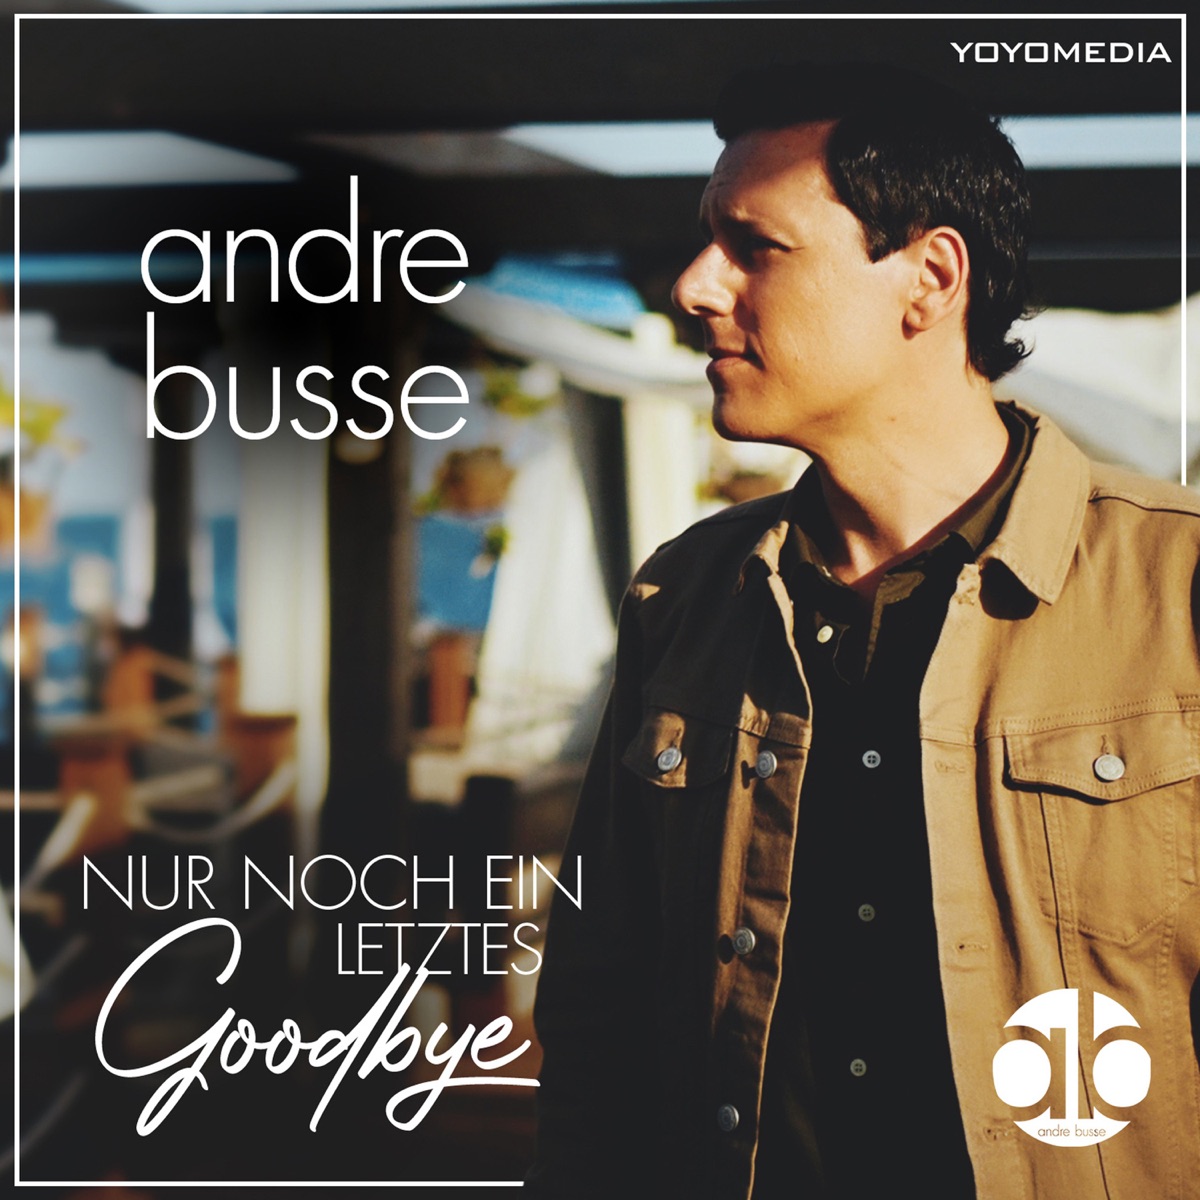 André Busse - Nur noch ein letztes Goodbye 